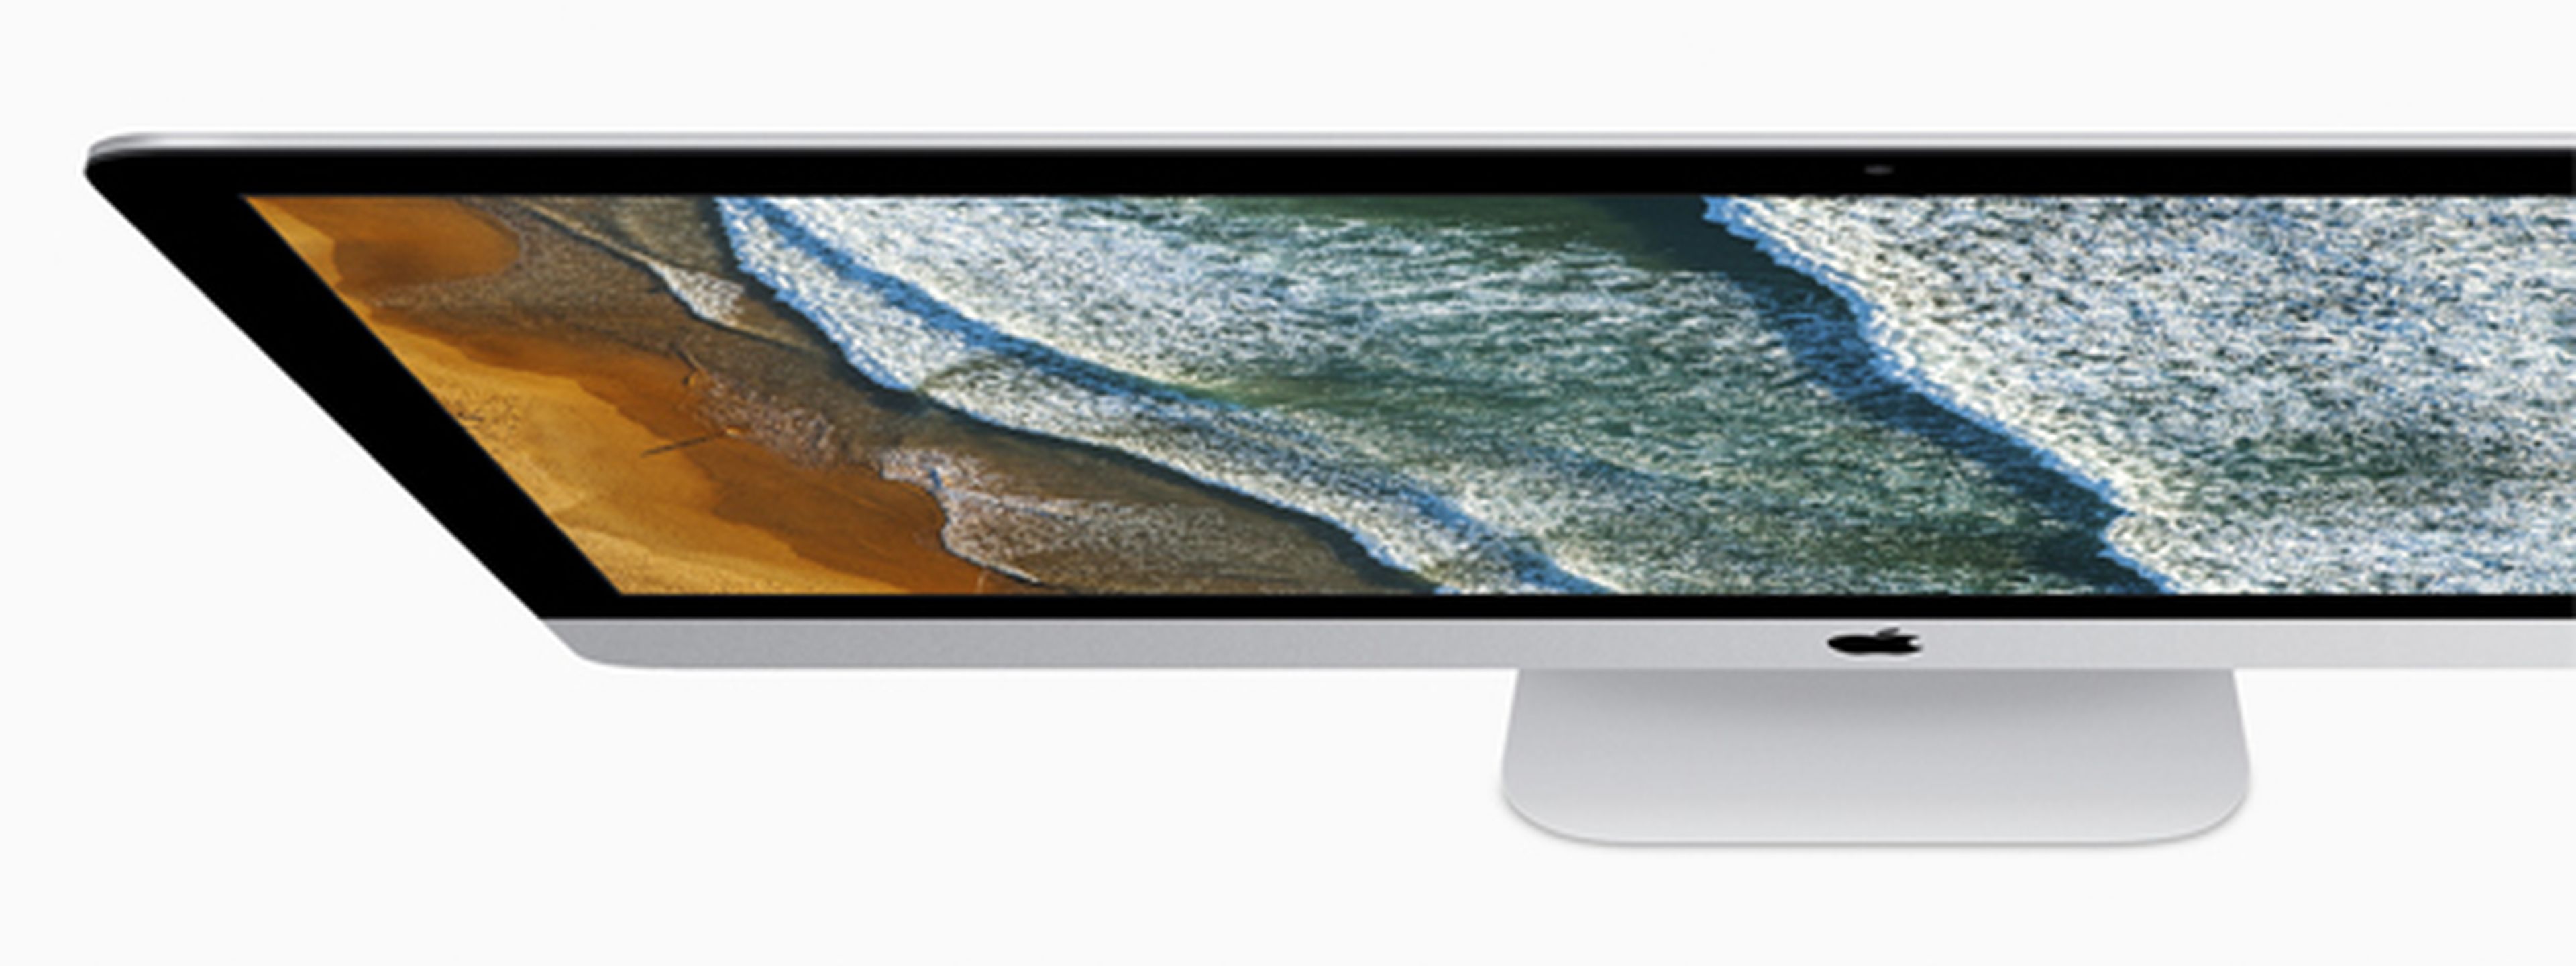 El nuevo iMac con Retina 5K